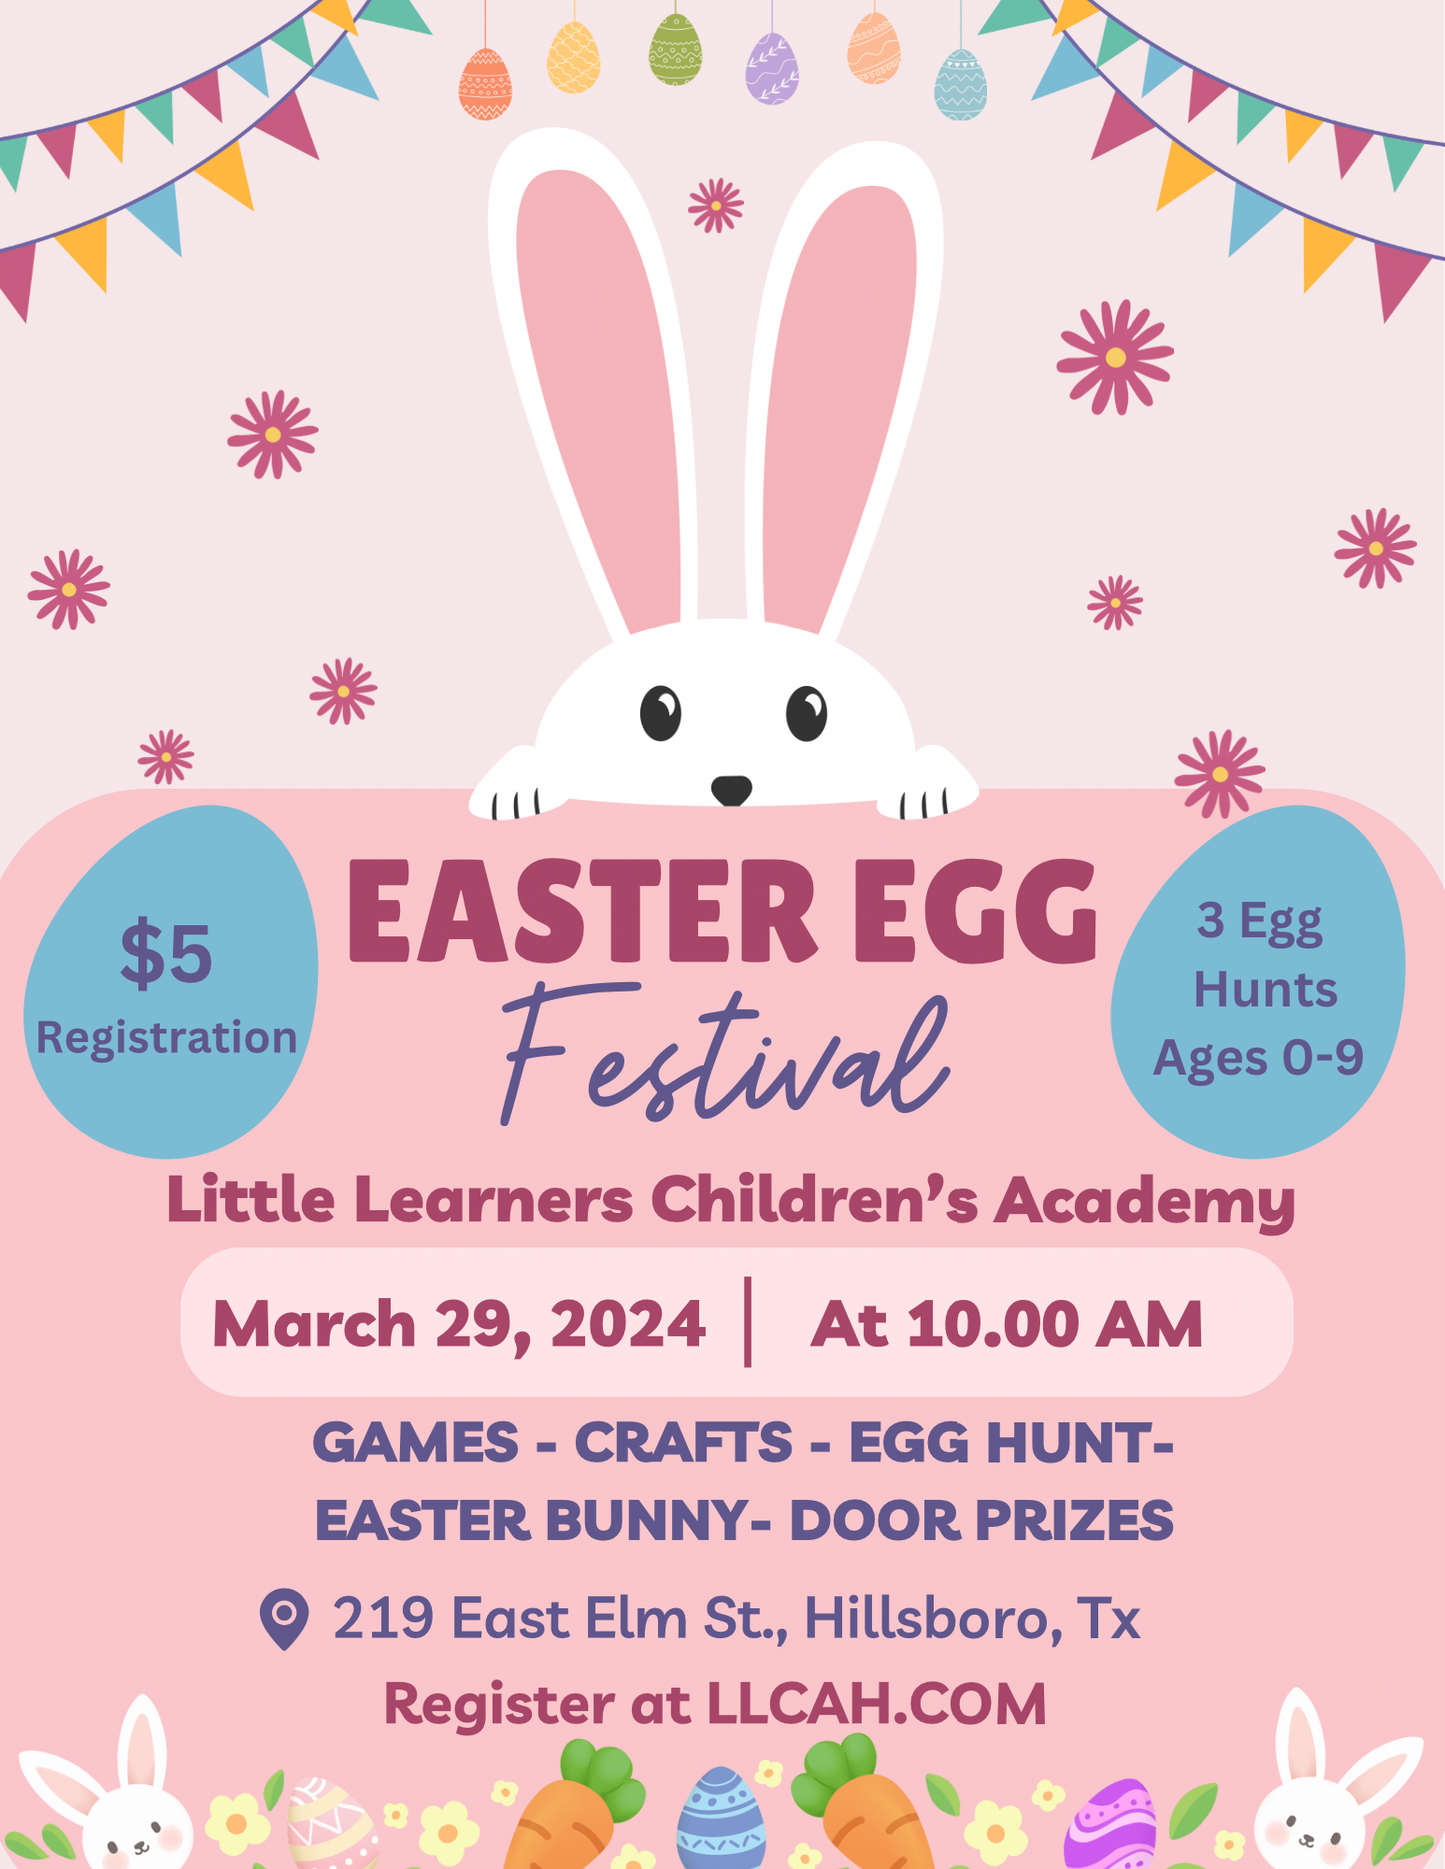 Easter Egg Festival